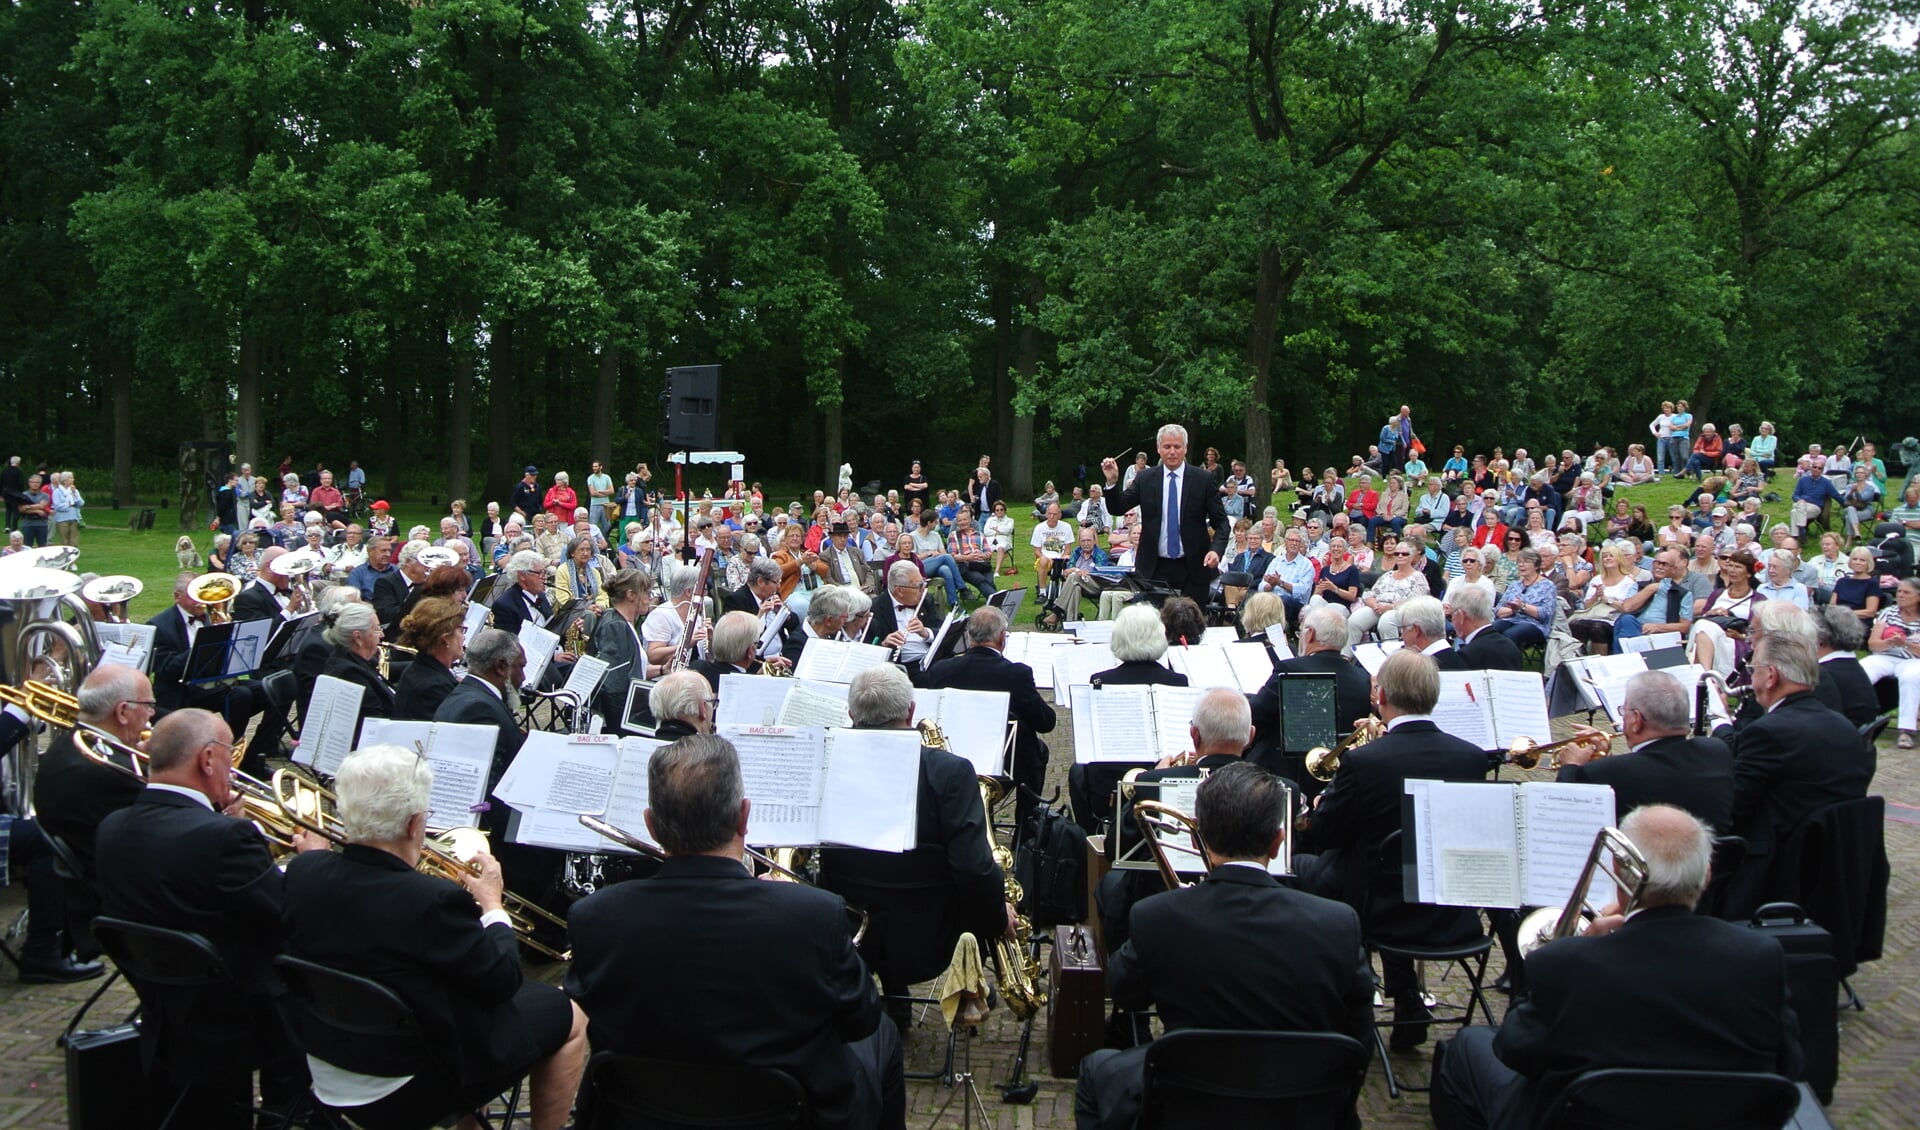  Op de voorgrond het Senioren Harmonie Orkest, o.l.v. Ton van Overdam, met het massaal toegestroomde publiek op de achtergrond.